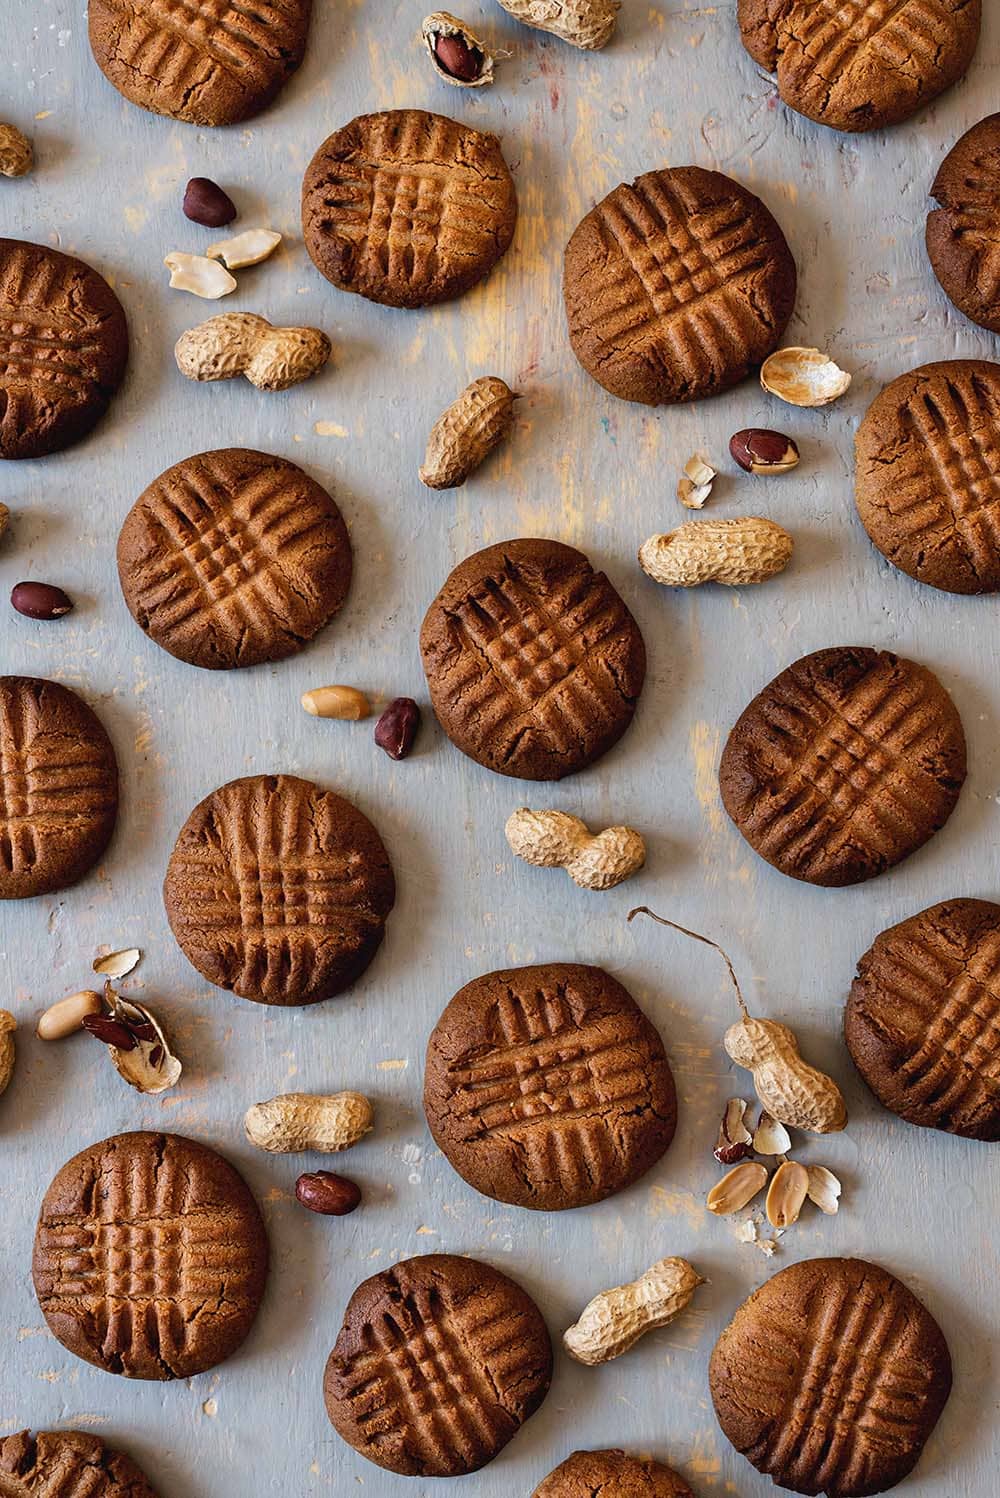 En una superficie gris están puestas las galletas de mantequilla de cacahuete crujientes junto con unos cacahuetes en sus cáscaras.